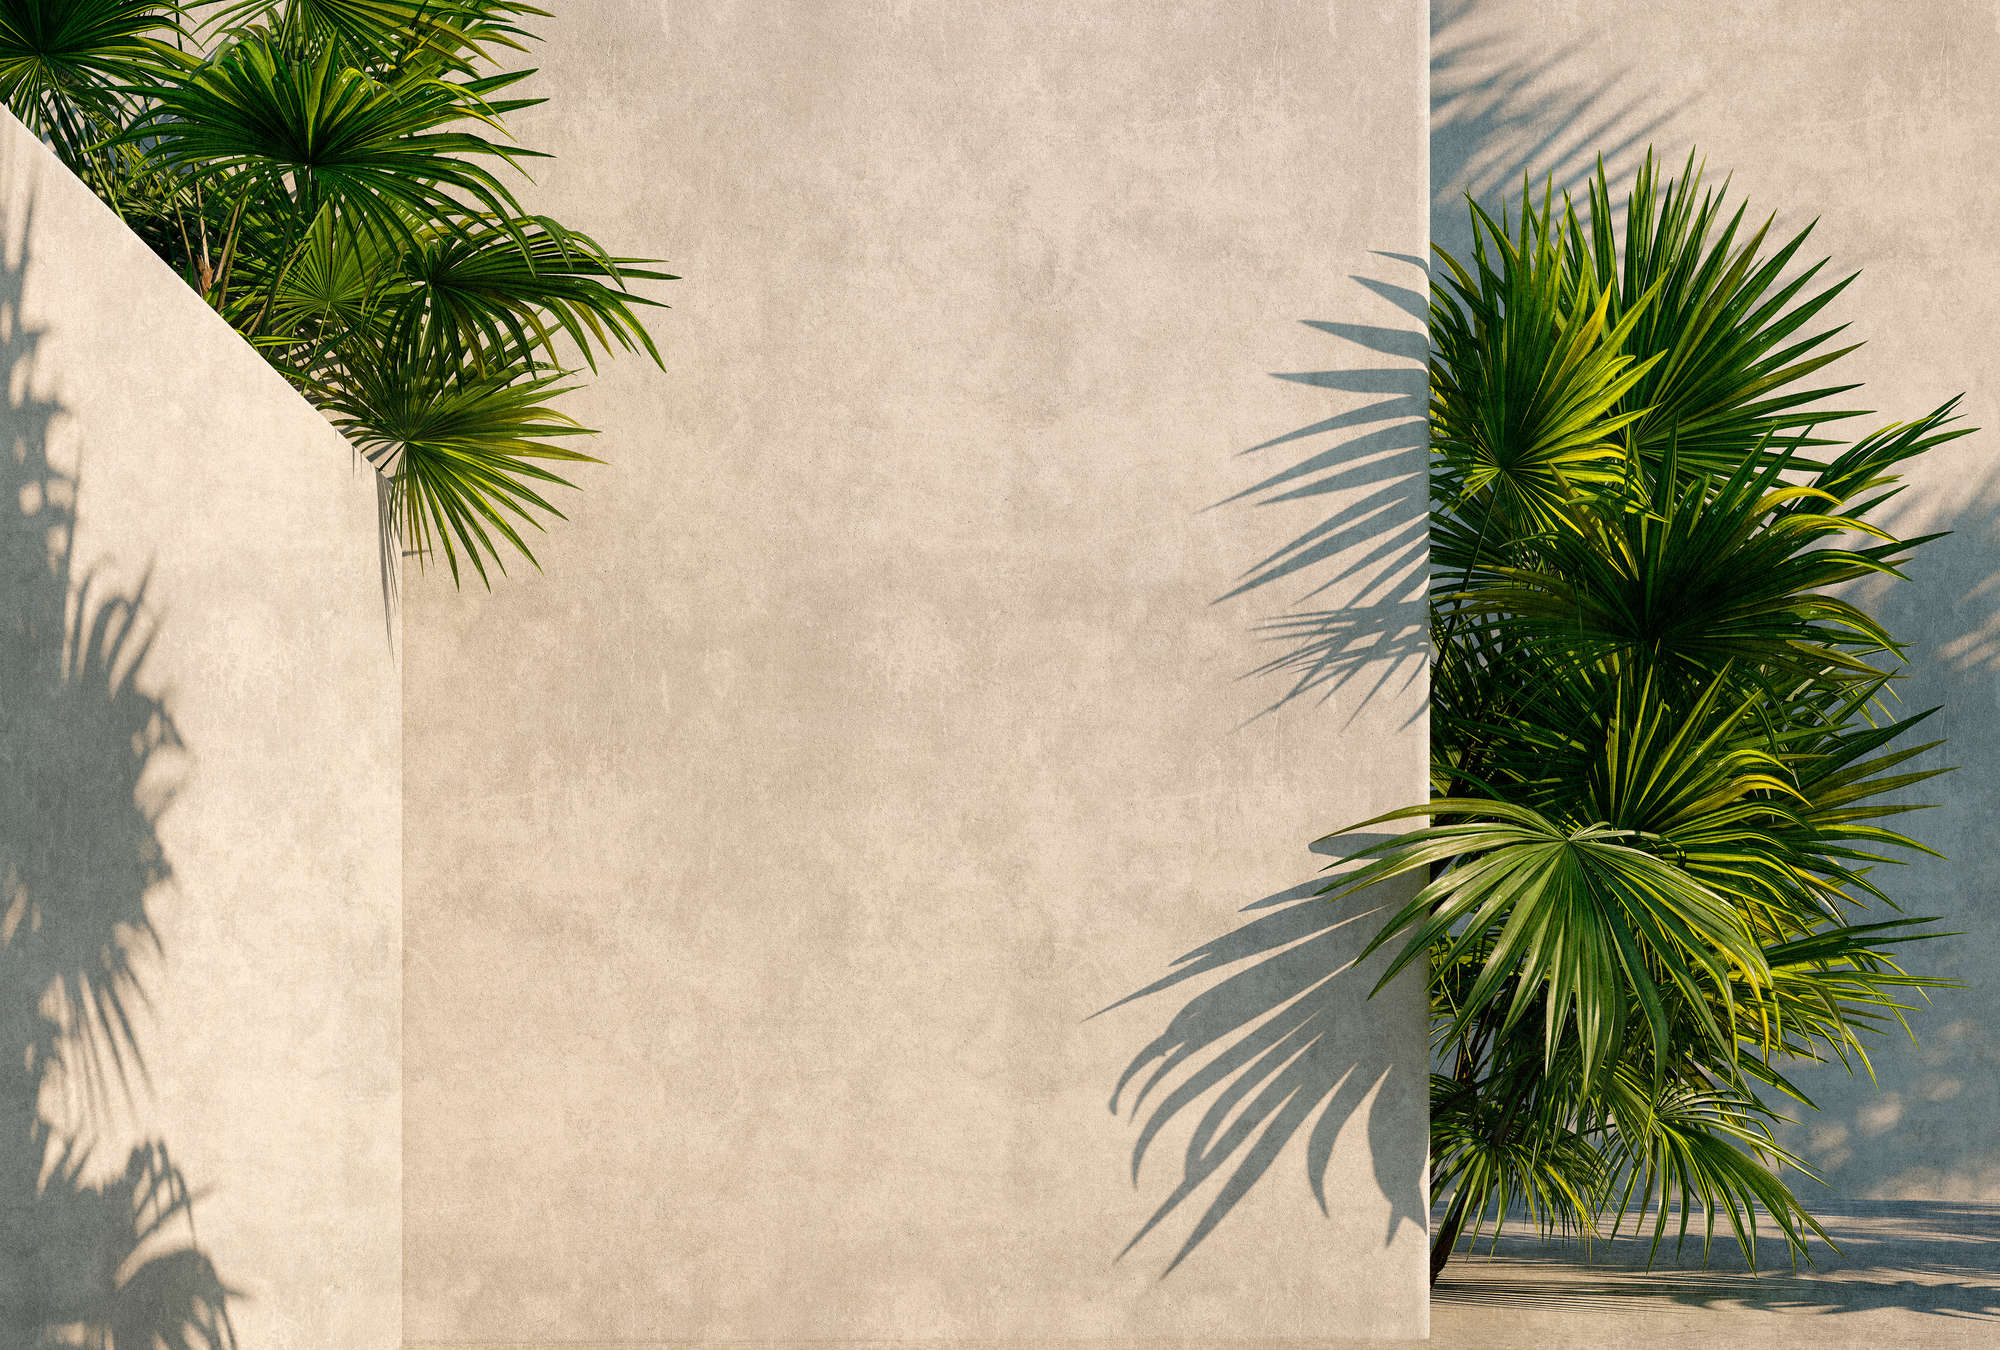             Tunis 1 – Fototapete Palmen im Innenhof mit Putz-Wänden
        